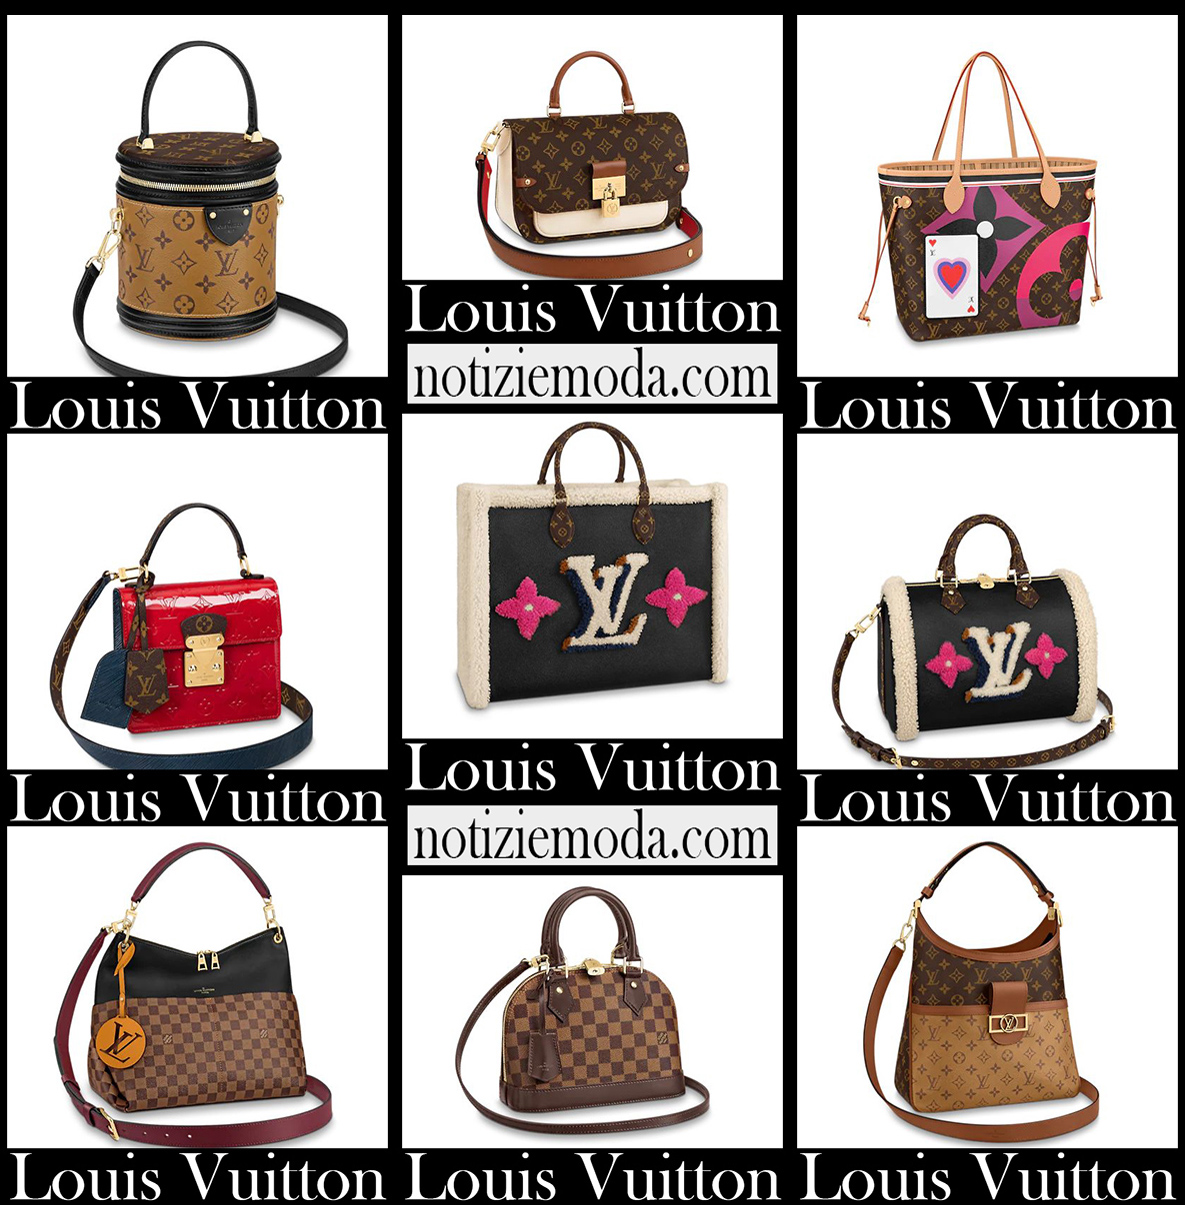 Nuovi arrivi borse Louis Vuitton 2021 accessori donna